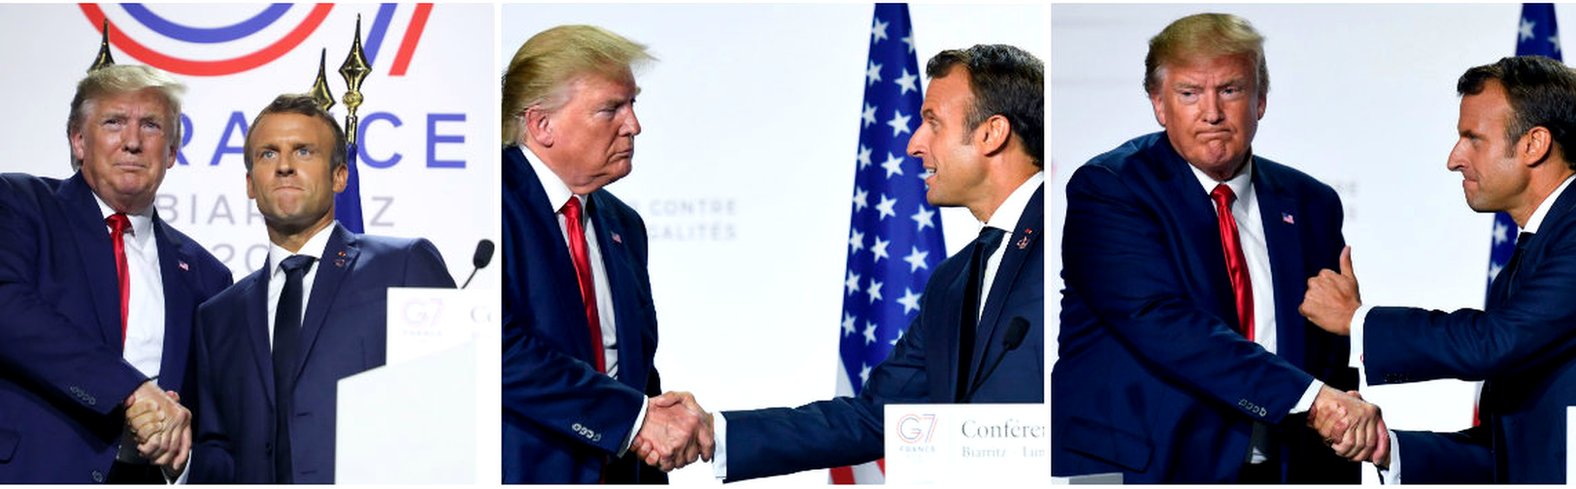 Дональд Трамп и Эммануэль Макрон на саммите G7 во Франции в августе